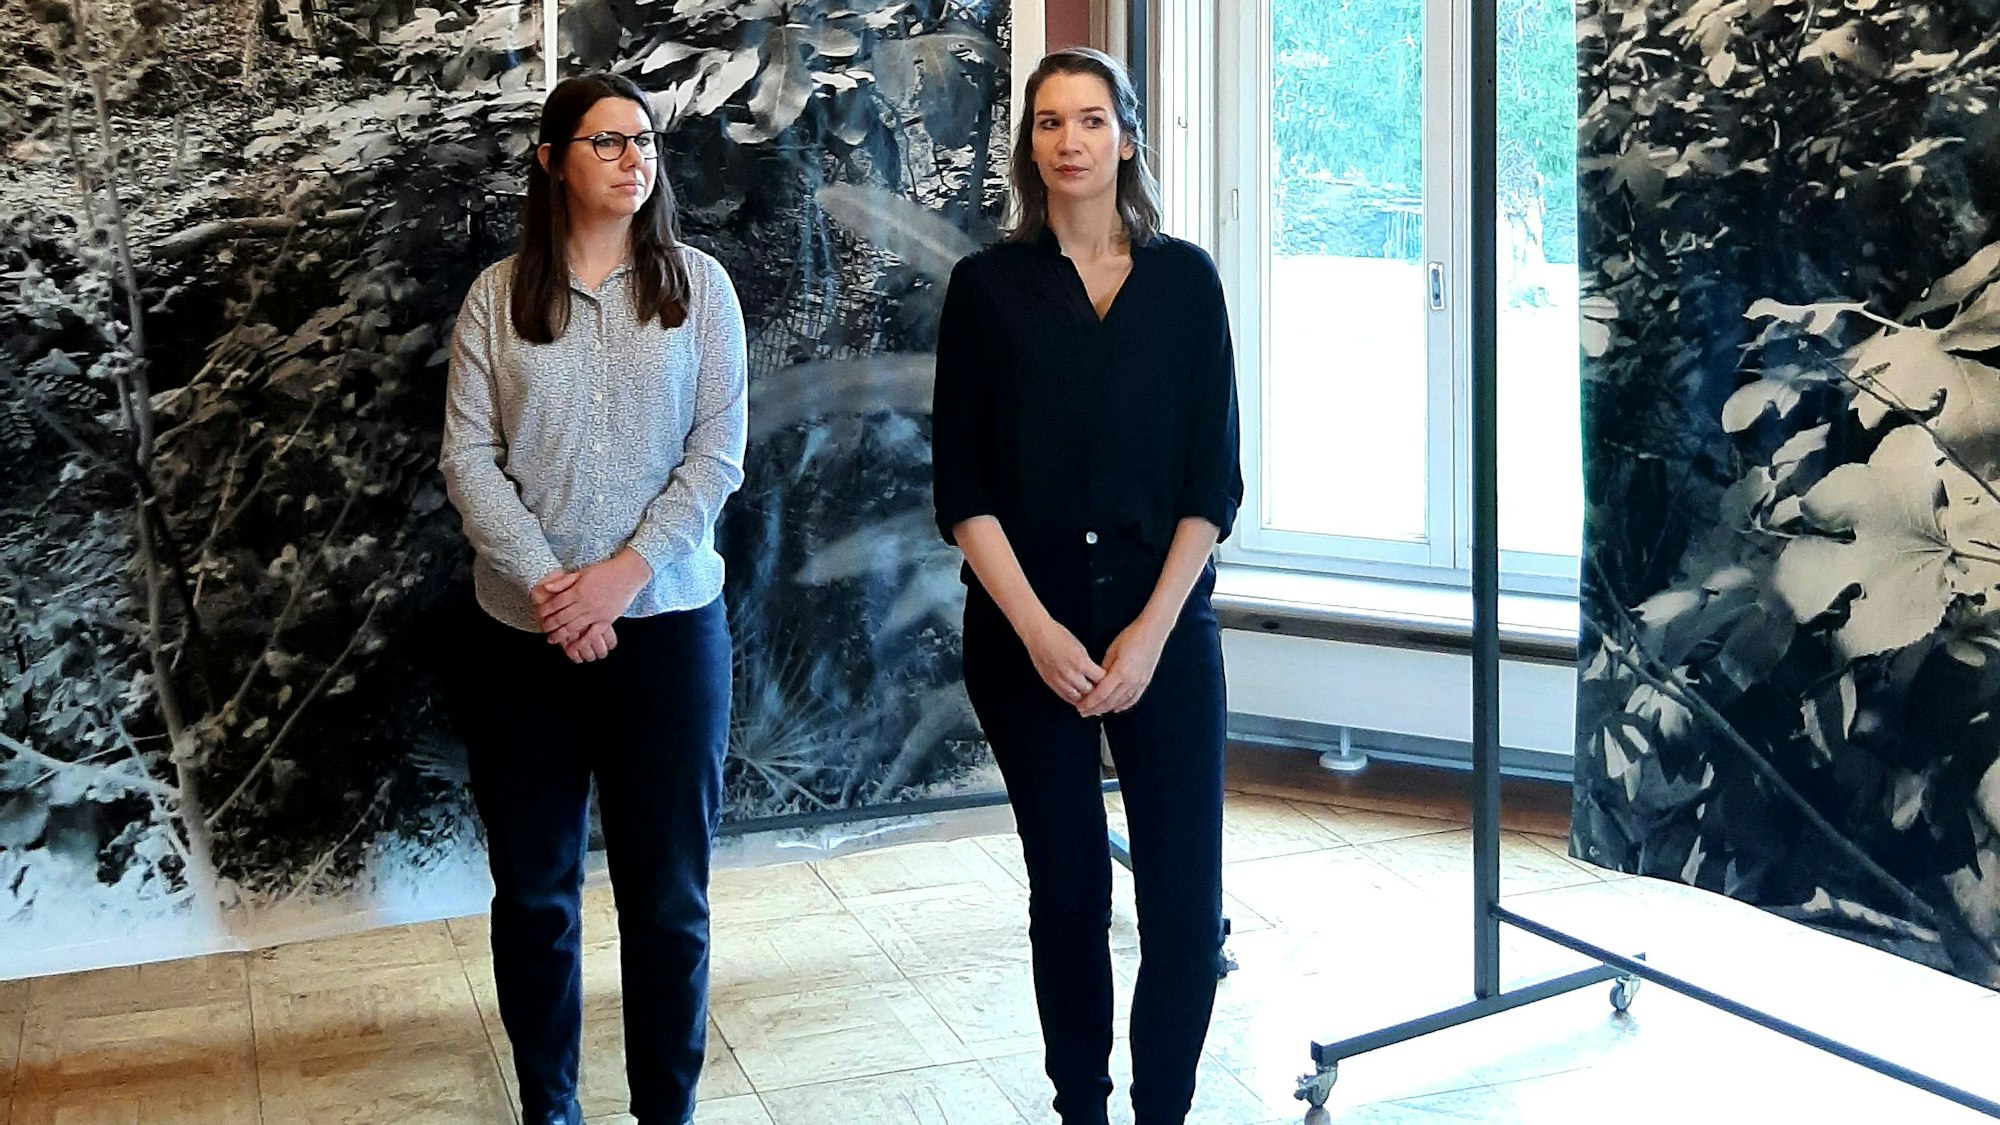 Ausstellung "An den Rändern" im Museum Morsbroich und dem Kunstverein Leverkusen, kuratiert von Miriam Edmunds (l.) aus Basel und Maxie Fischer aus Berlin. 